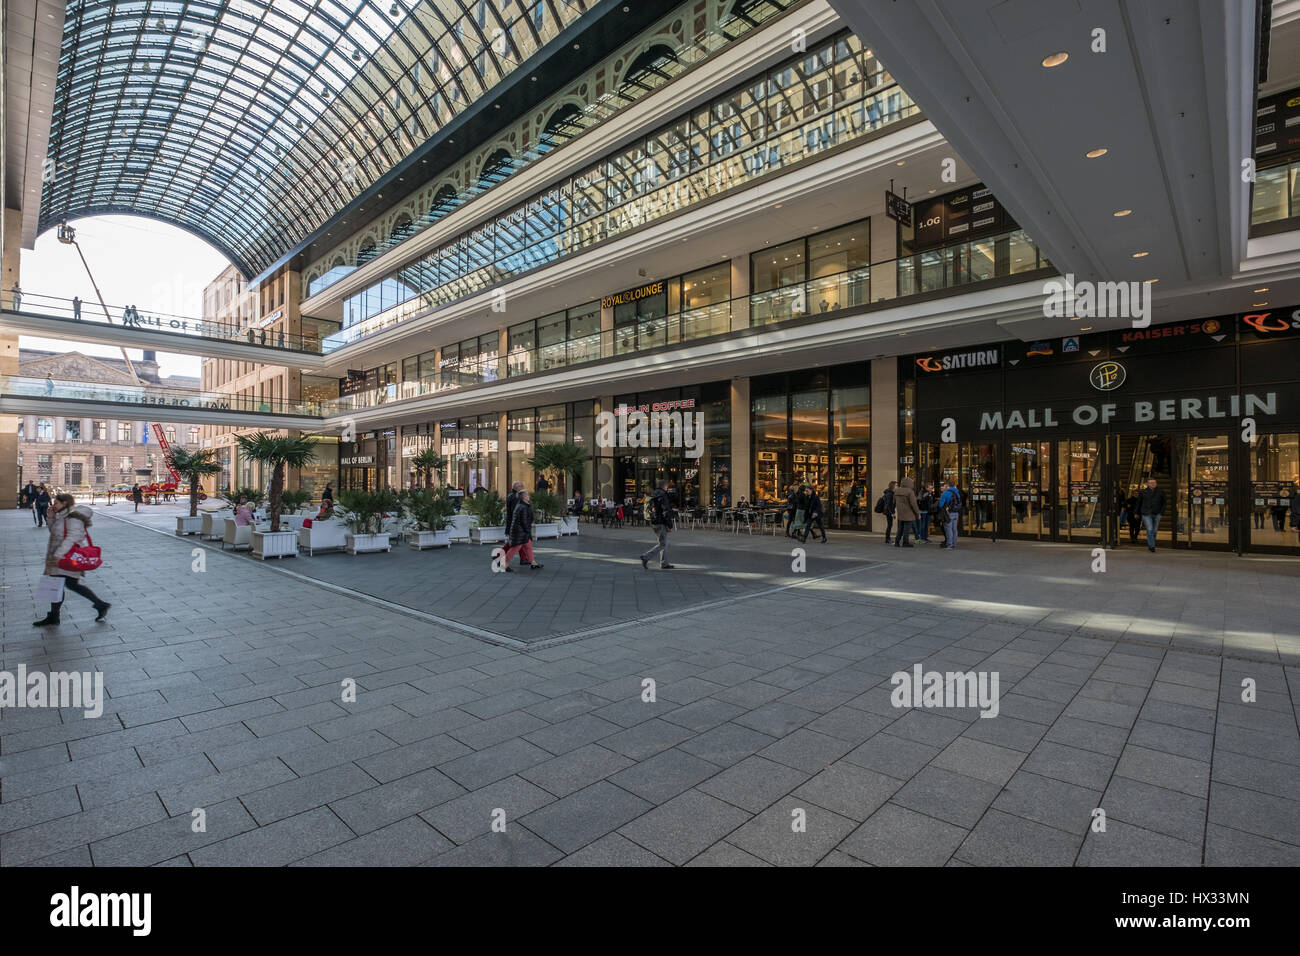 Berlin, Allemagne - 24 mars 2017 : l'intérieur de la cour de 'Le centre commercial de Berlin', un grand centre commercial de Berlin, Allemagne. Banque D'Images